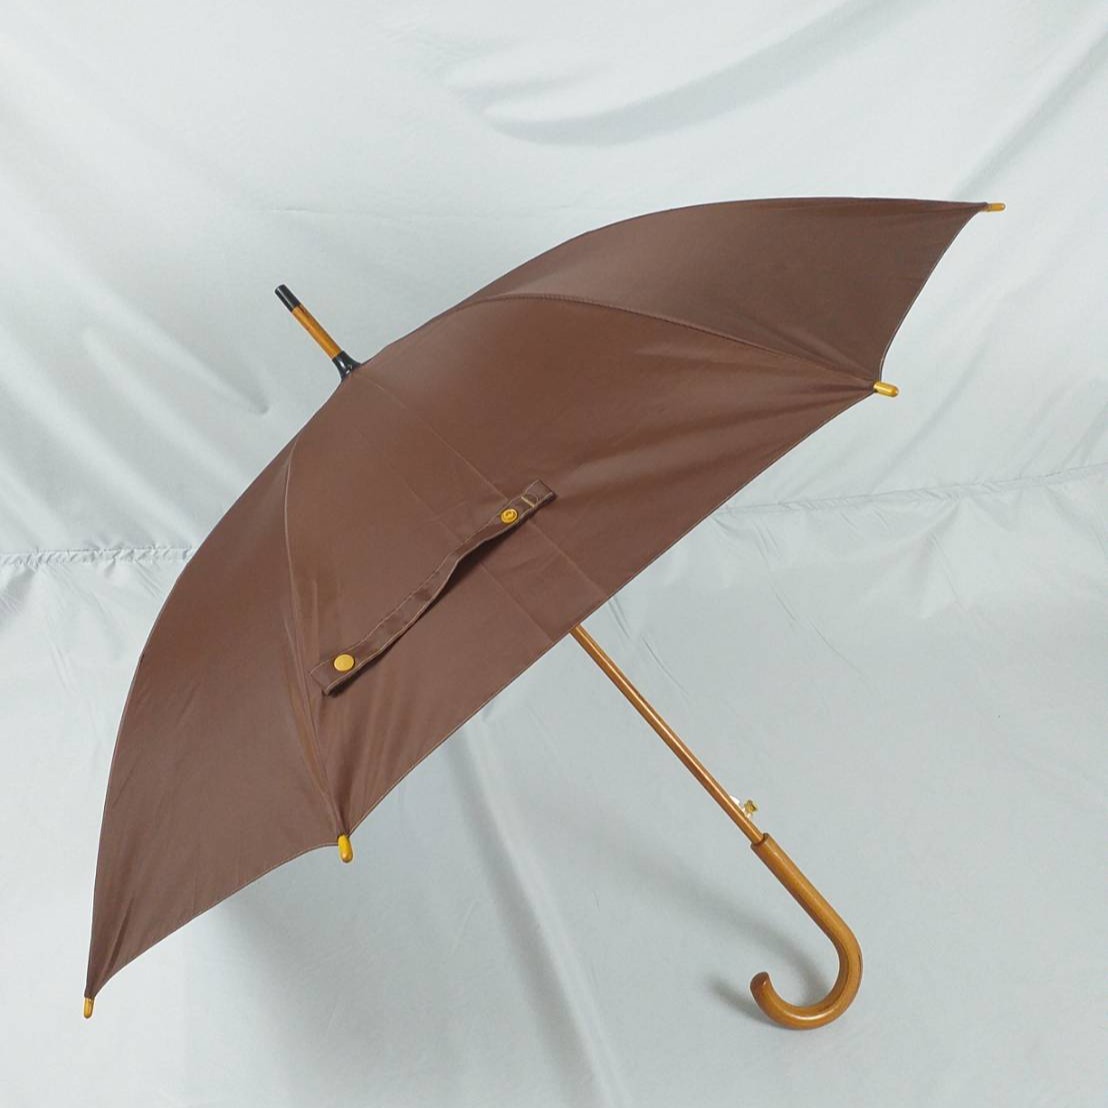 ร่ม ร่มพระ ร่มถวายพระสงฆ์ ขนาด24นิ้ว แกนไม้ ด้ามไม้ ร่มกันแดด ร่มกันฝน ผลิตในไทย umbrella  รหัส 24-3